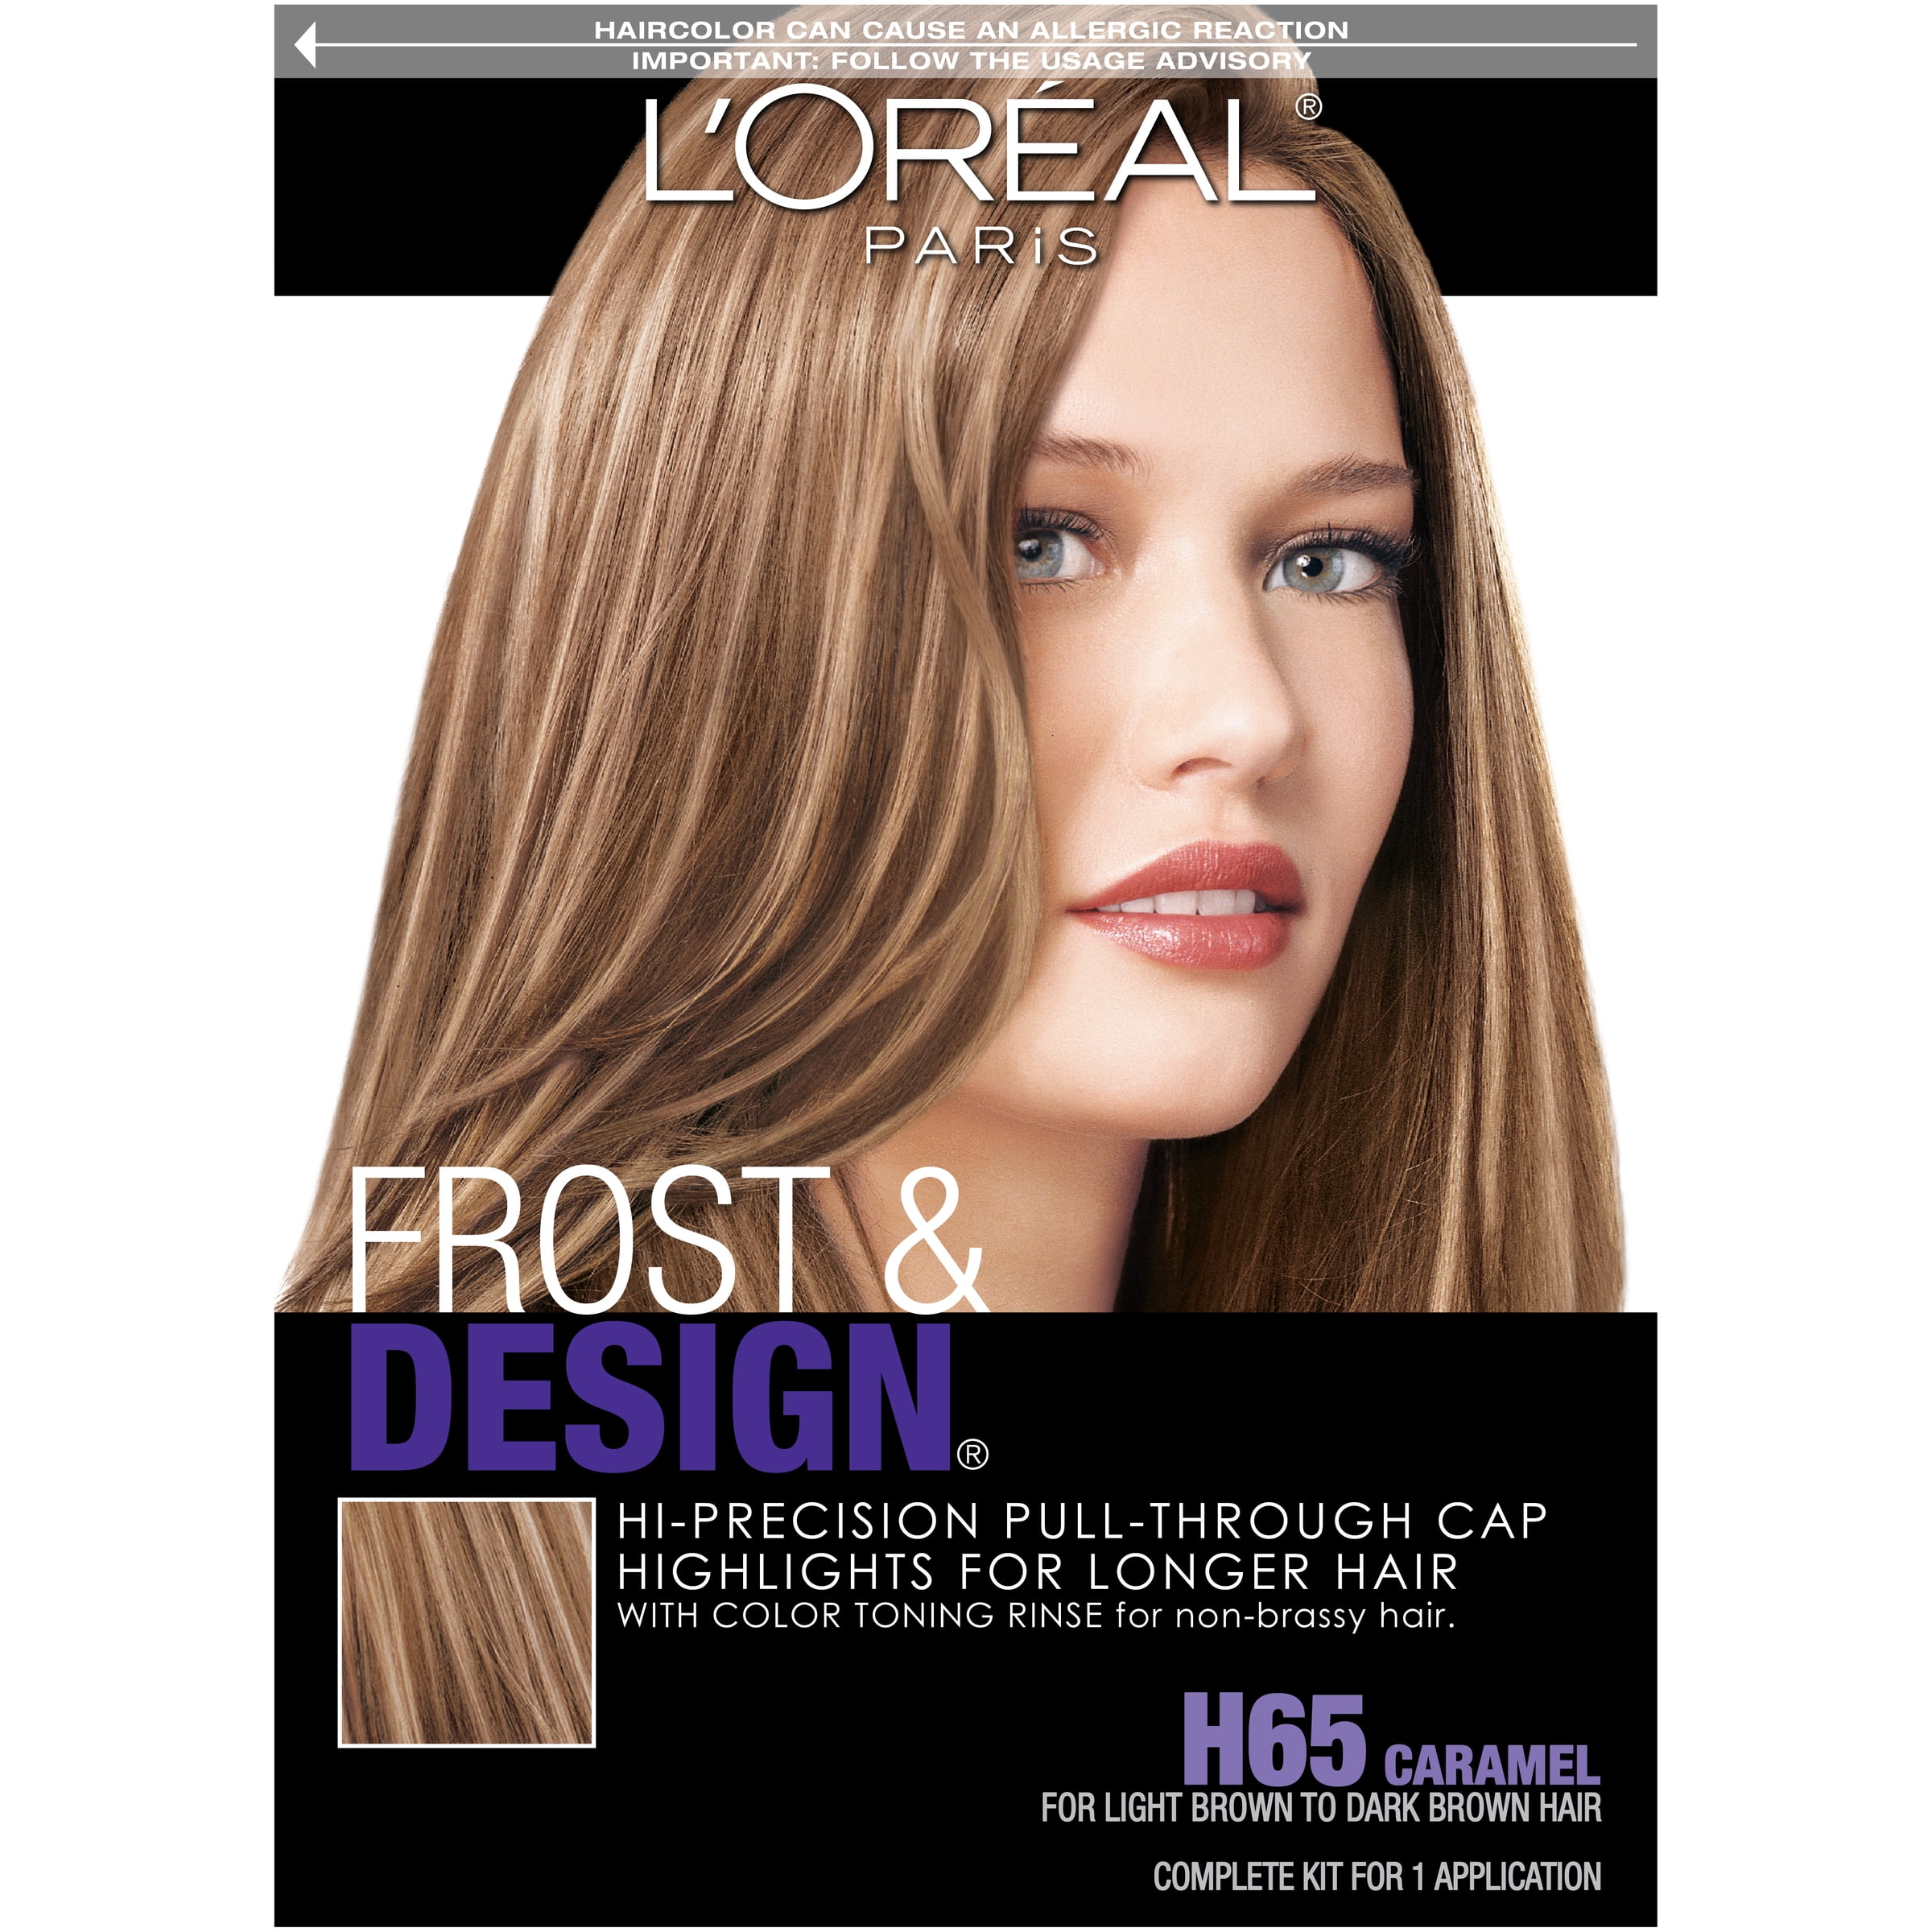 L'Oreal Paris Frost & Design Caramel H65 Hair Color, 1 Application